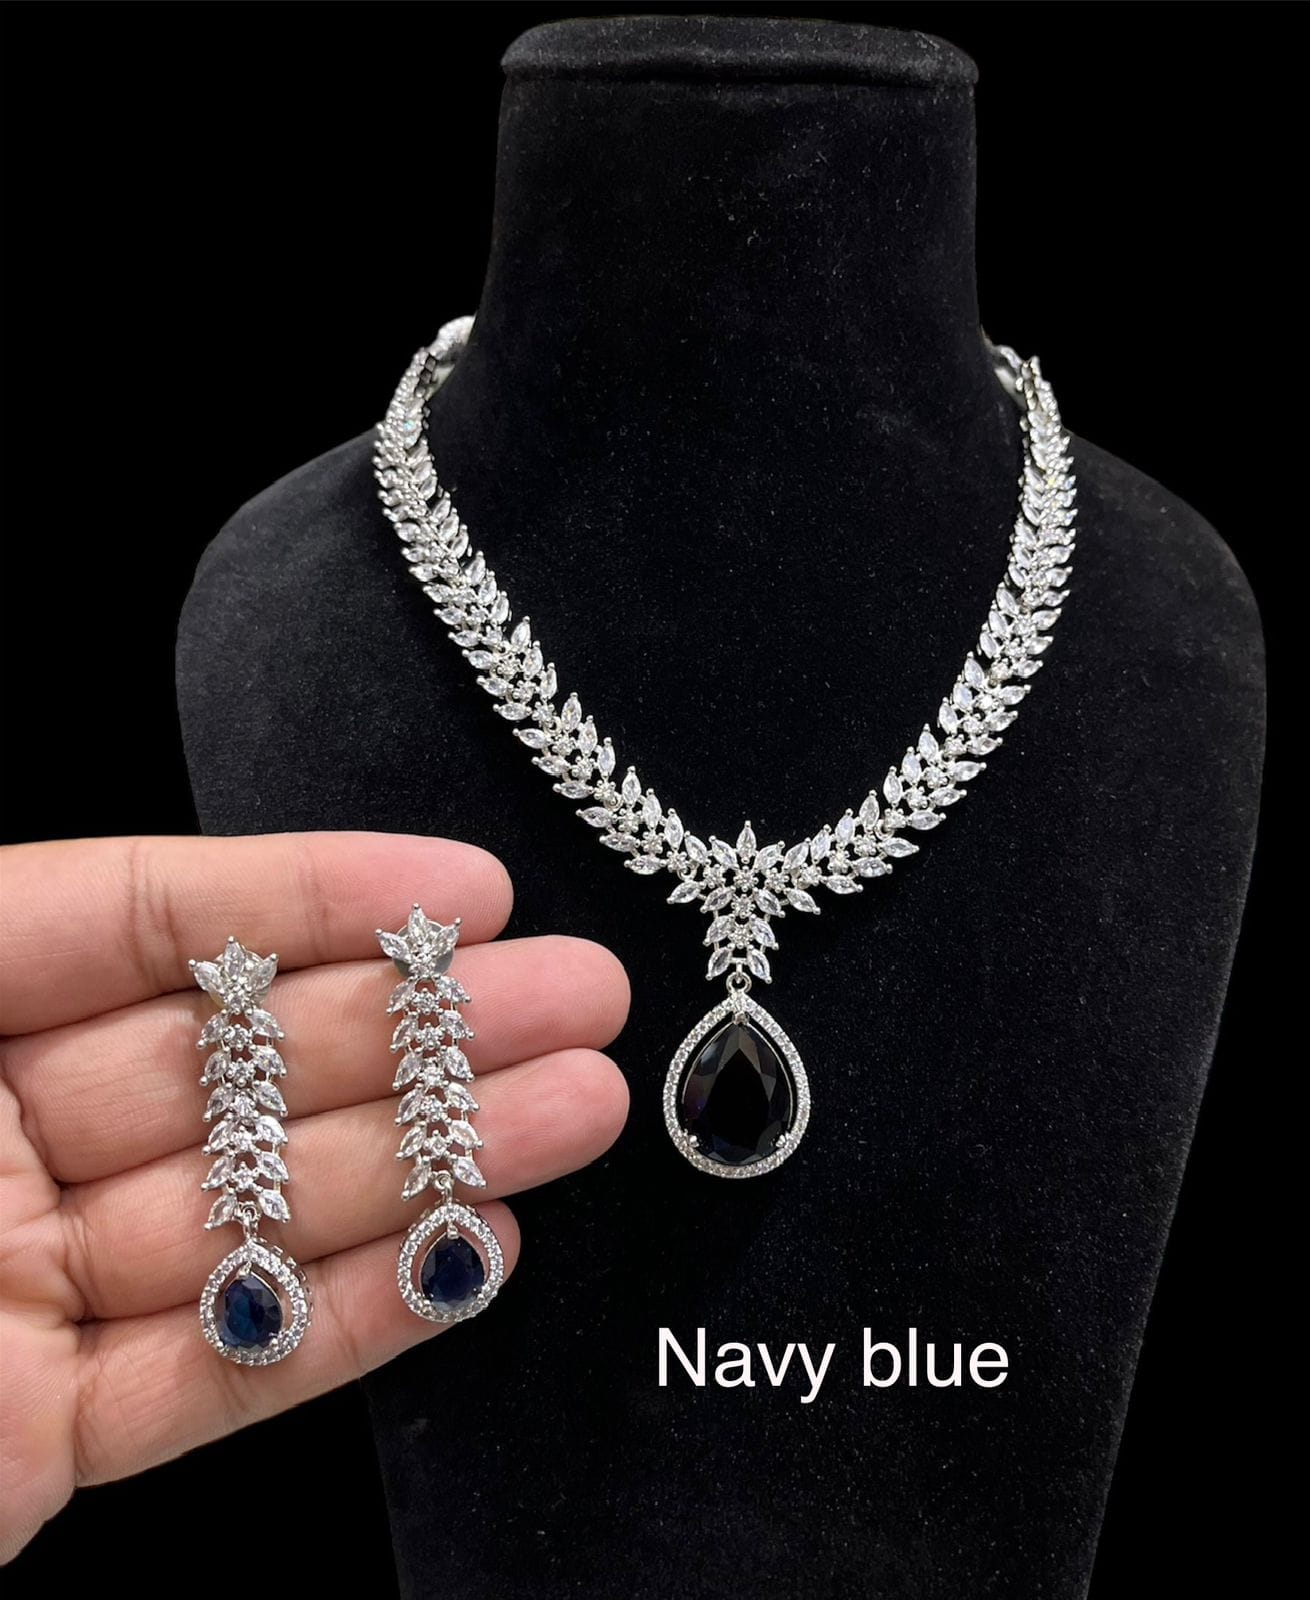 Diamond Necklaces: Pendants, Chains & More | Blue Nile